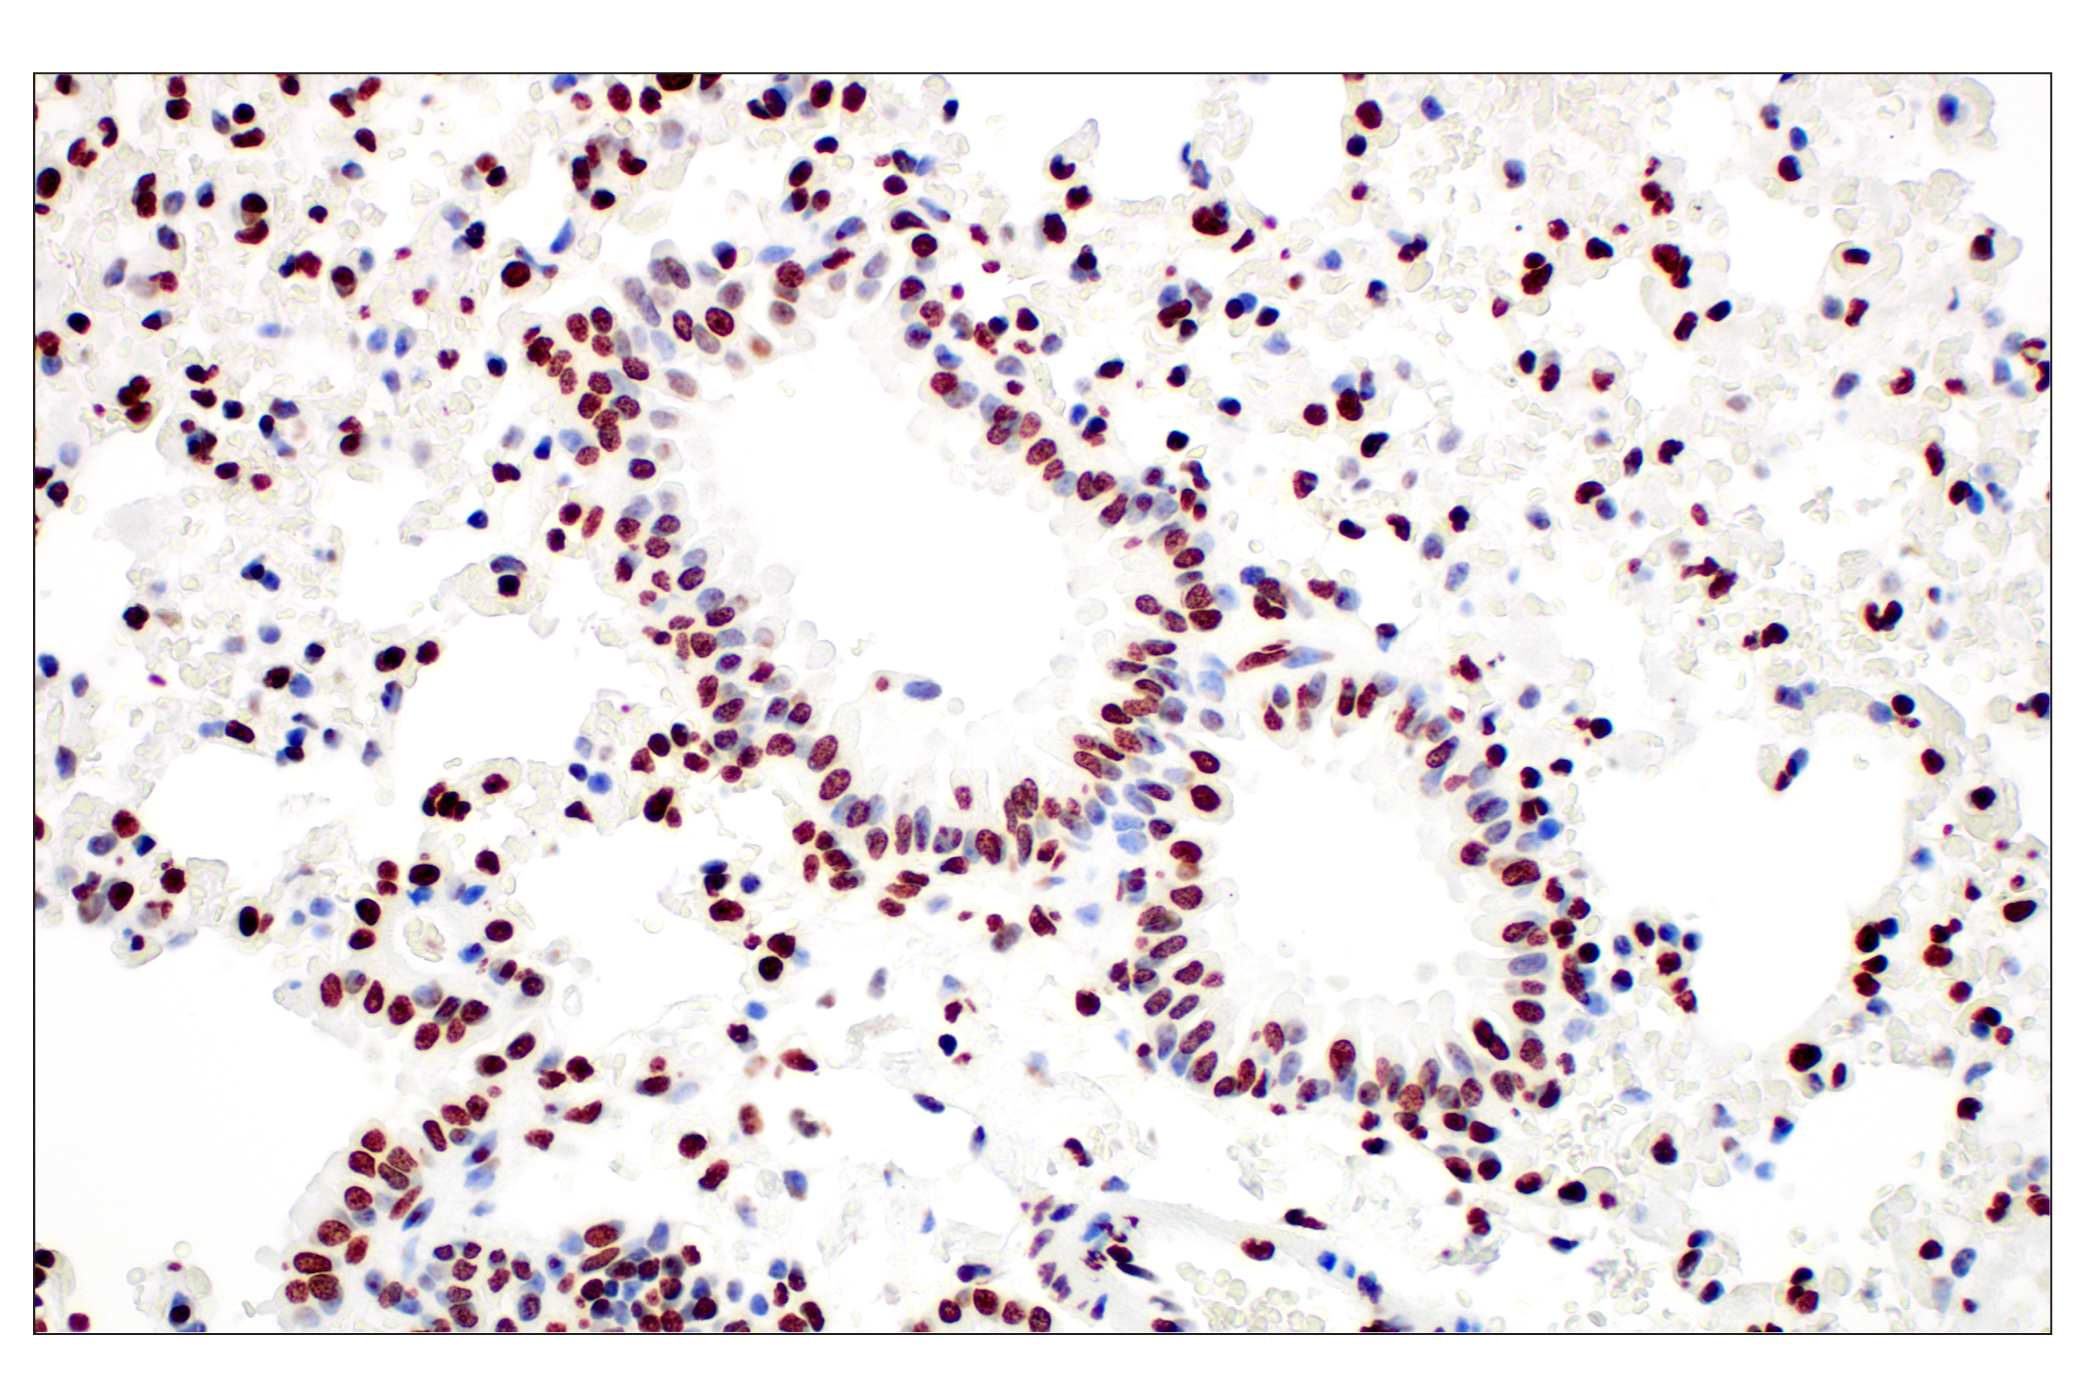  Image 17: Methyl-Histone H3 (Lys27) Antibody Sampler Kit